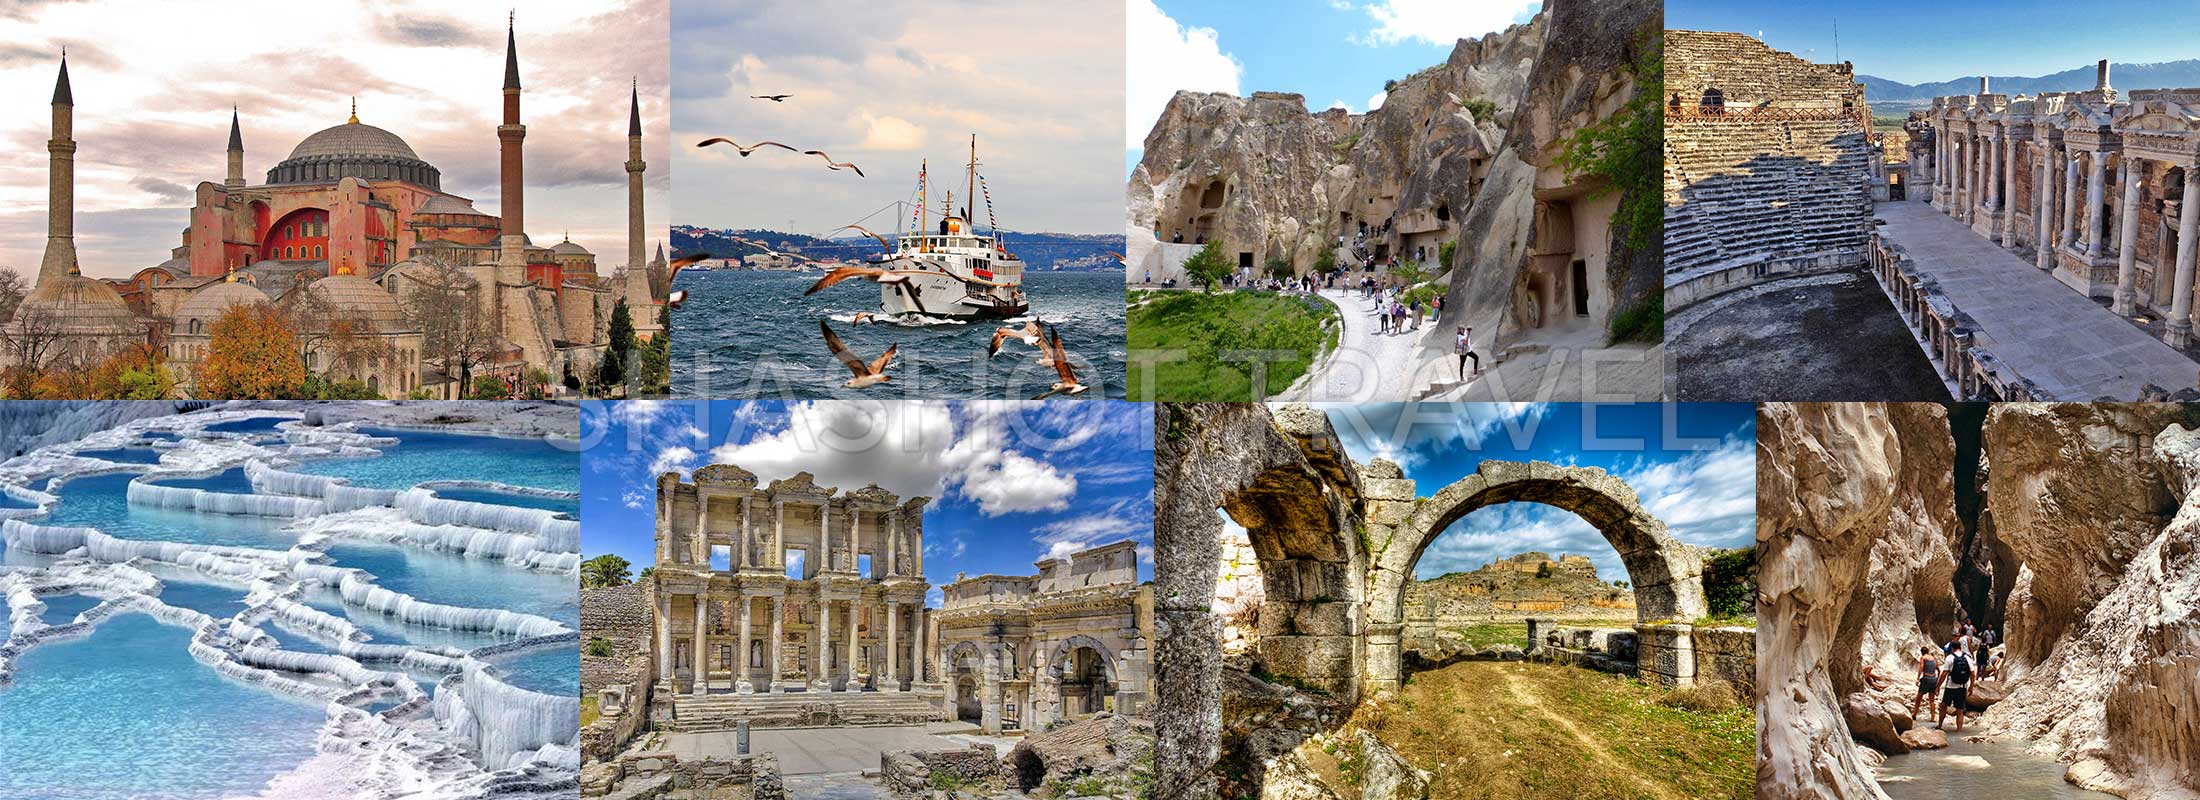 10-DAYS-TURKEY-PACKAGE-TOUR-ISTANBUL-CAPPADOCIA-PAMUKKALE-EPHESUS-FETHIYE-BY-FLIGHT